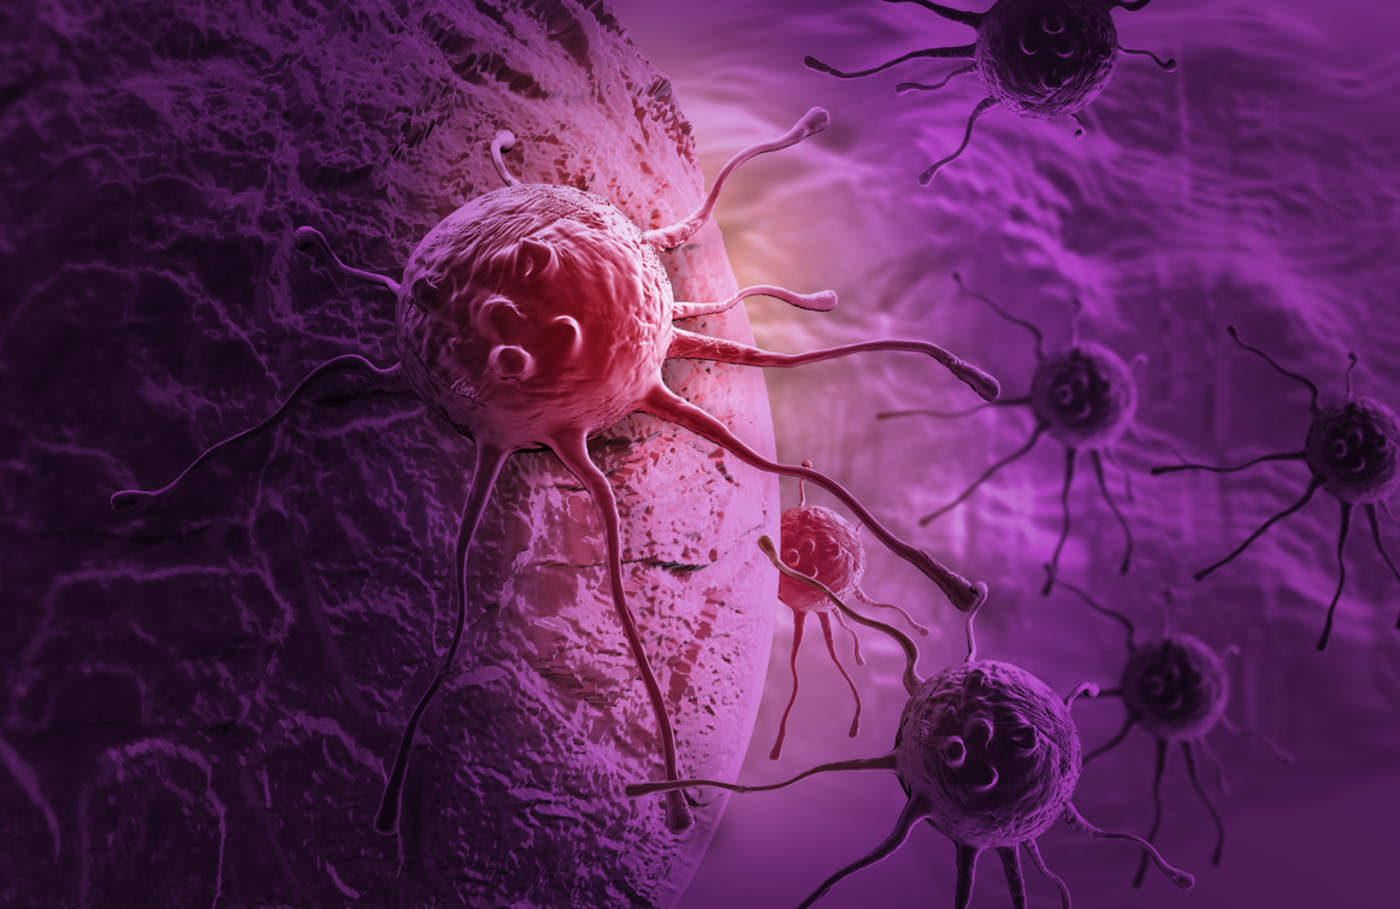 Pruebas genéticas permiten tratamiento adecuado del cáncer